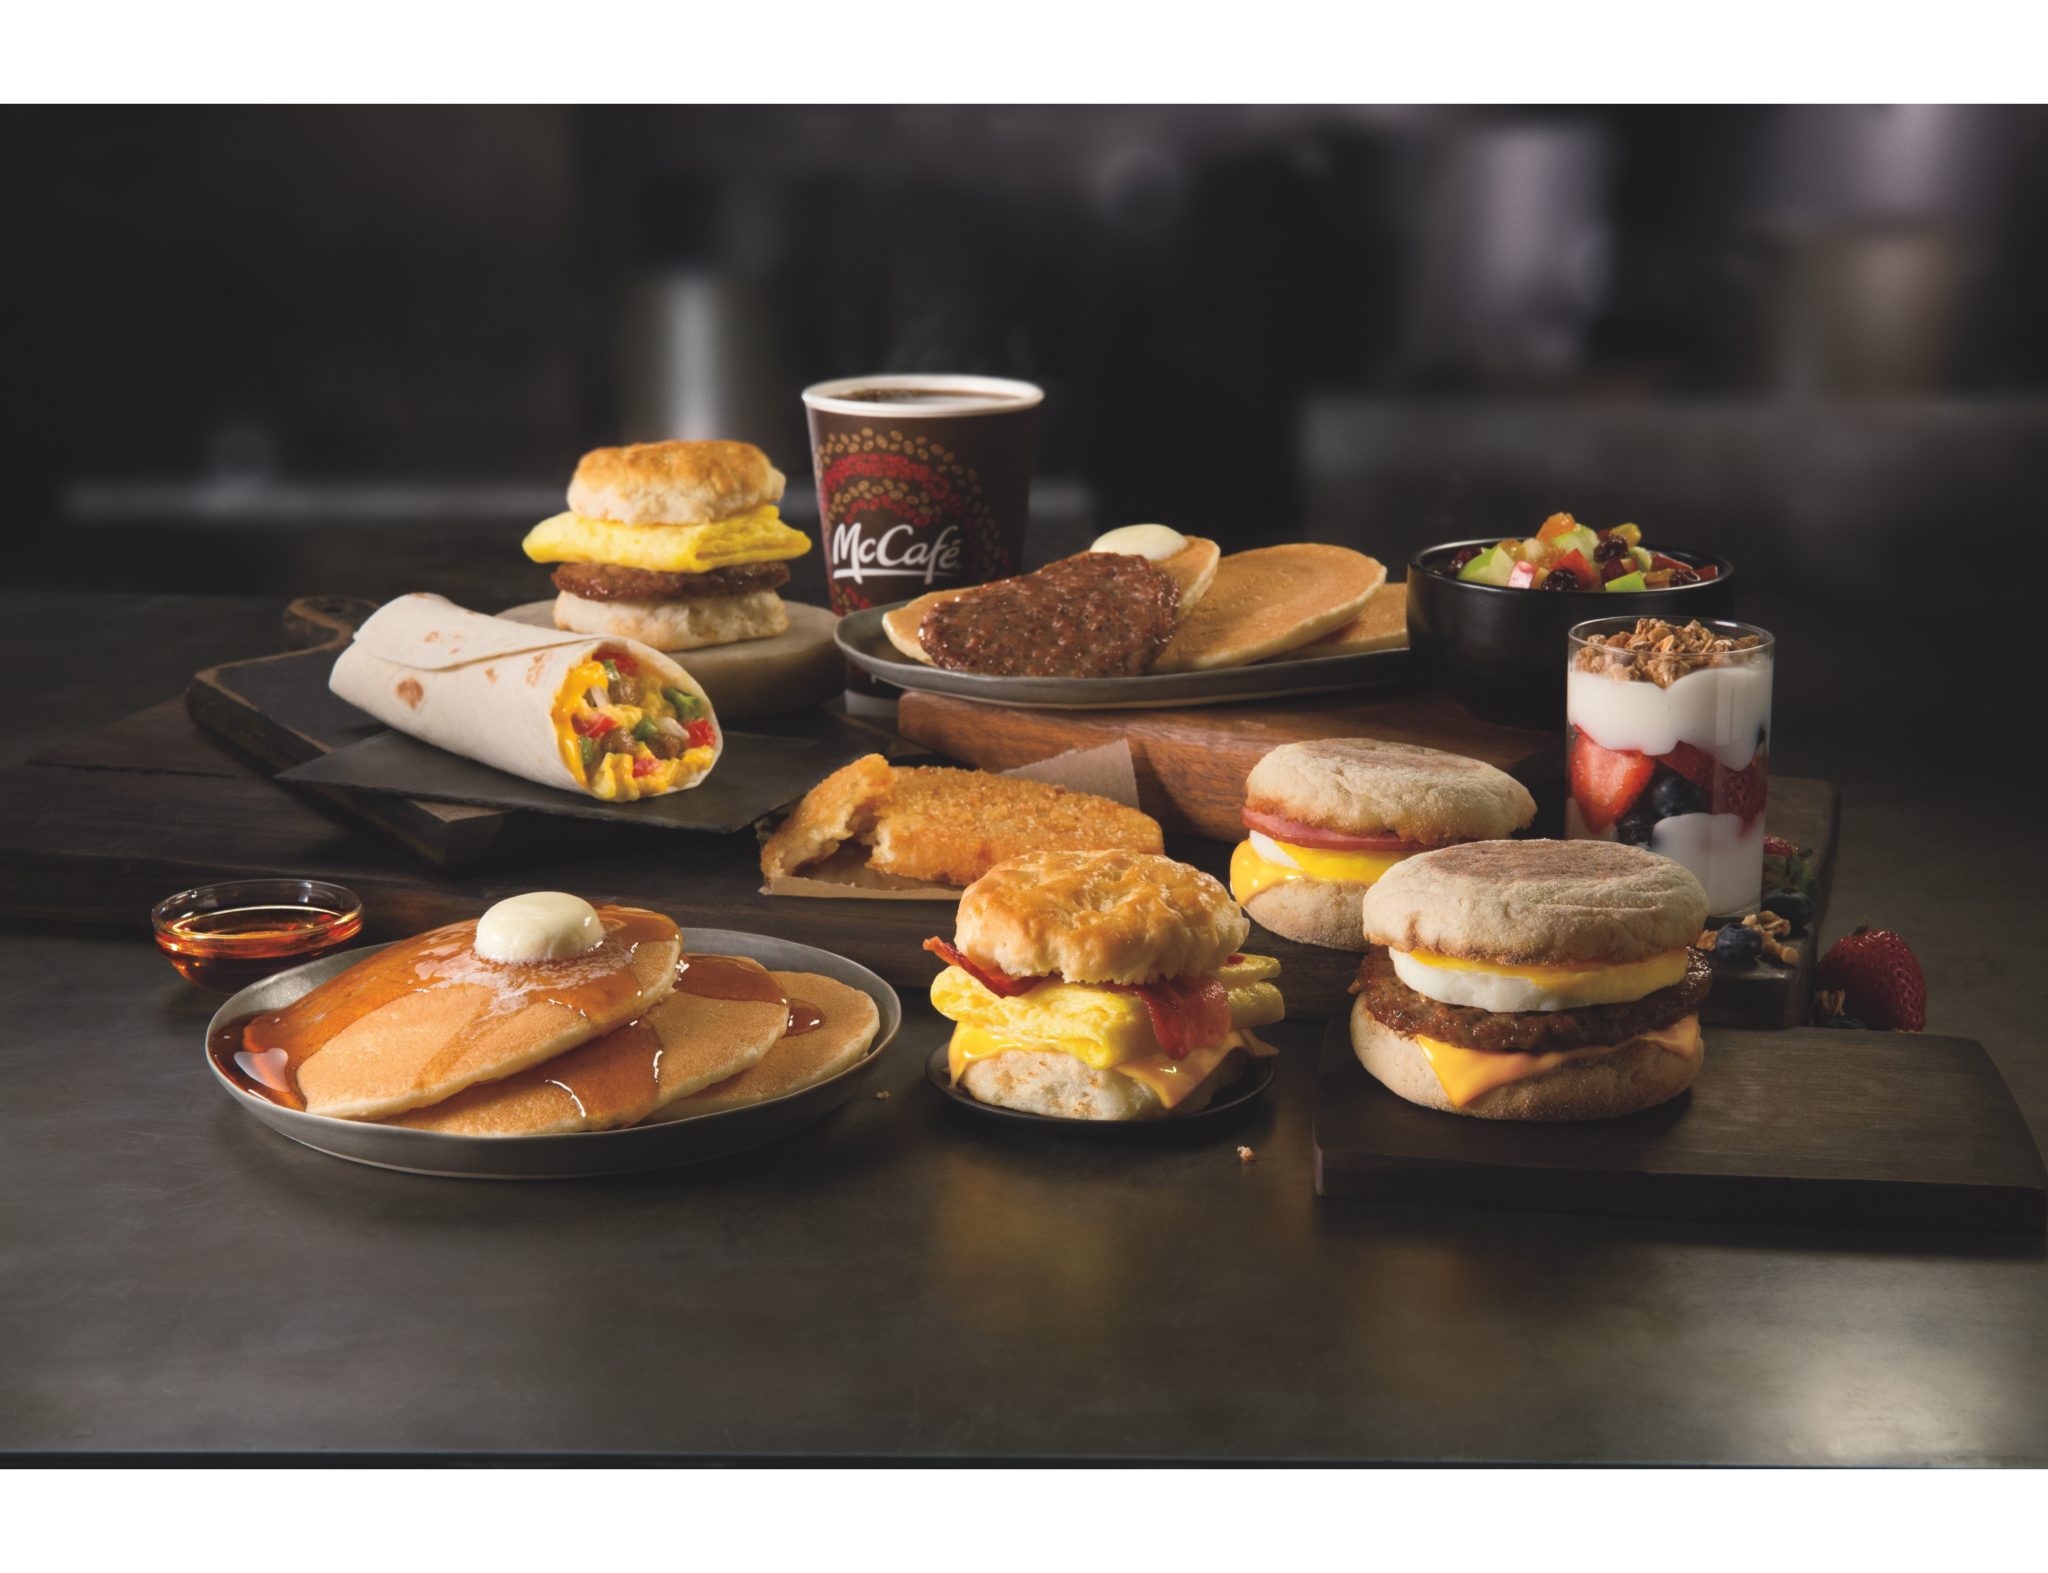 New McDonald's Breakfast Hours #McDPJParty | ToyQueen.com